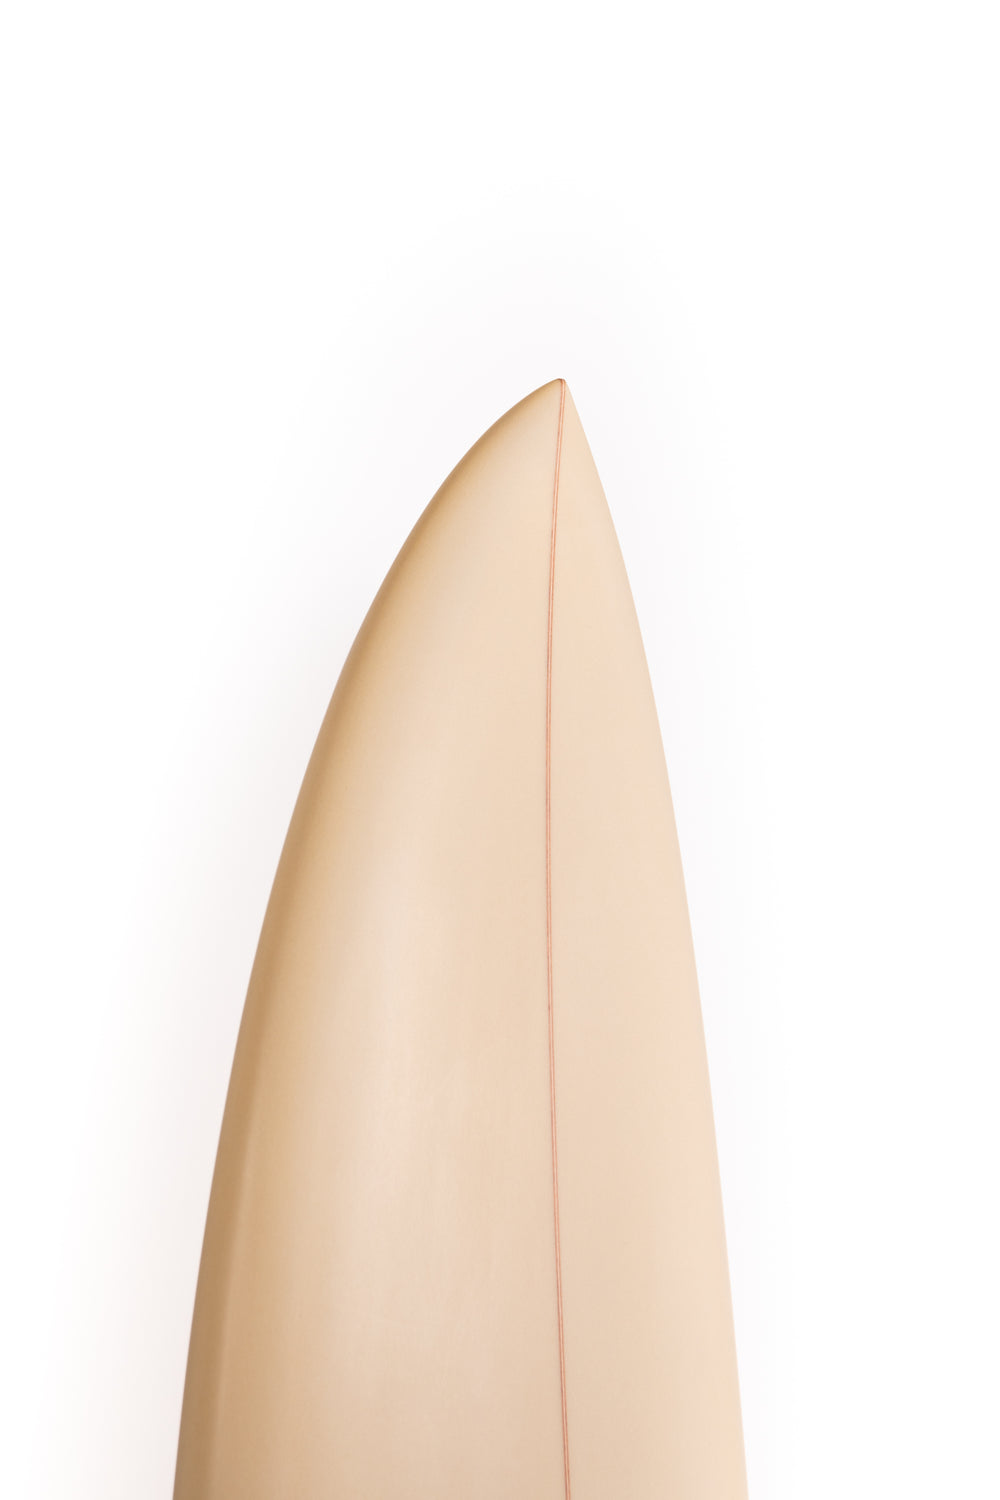 Pukas Surfboard - LADY TWIN 6'6